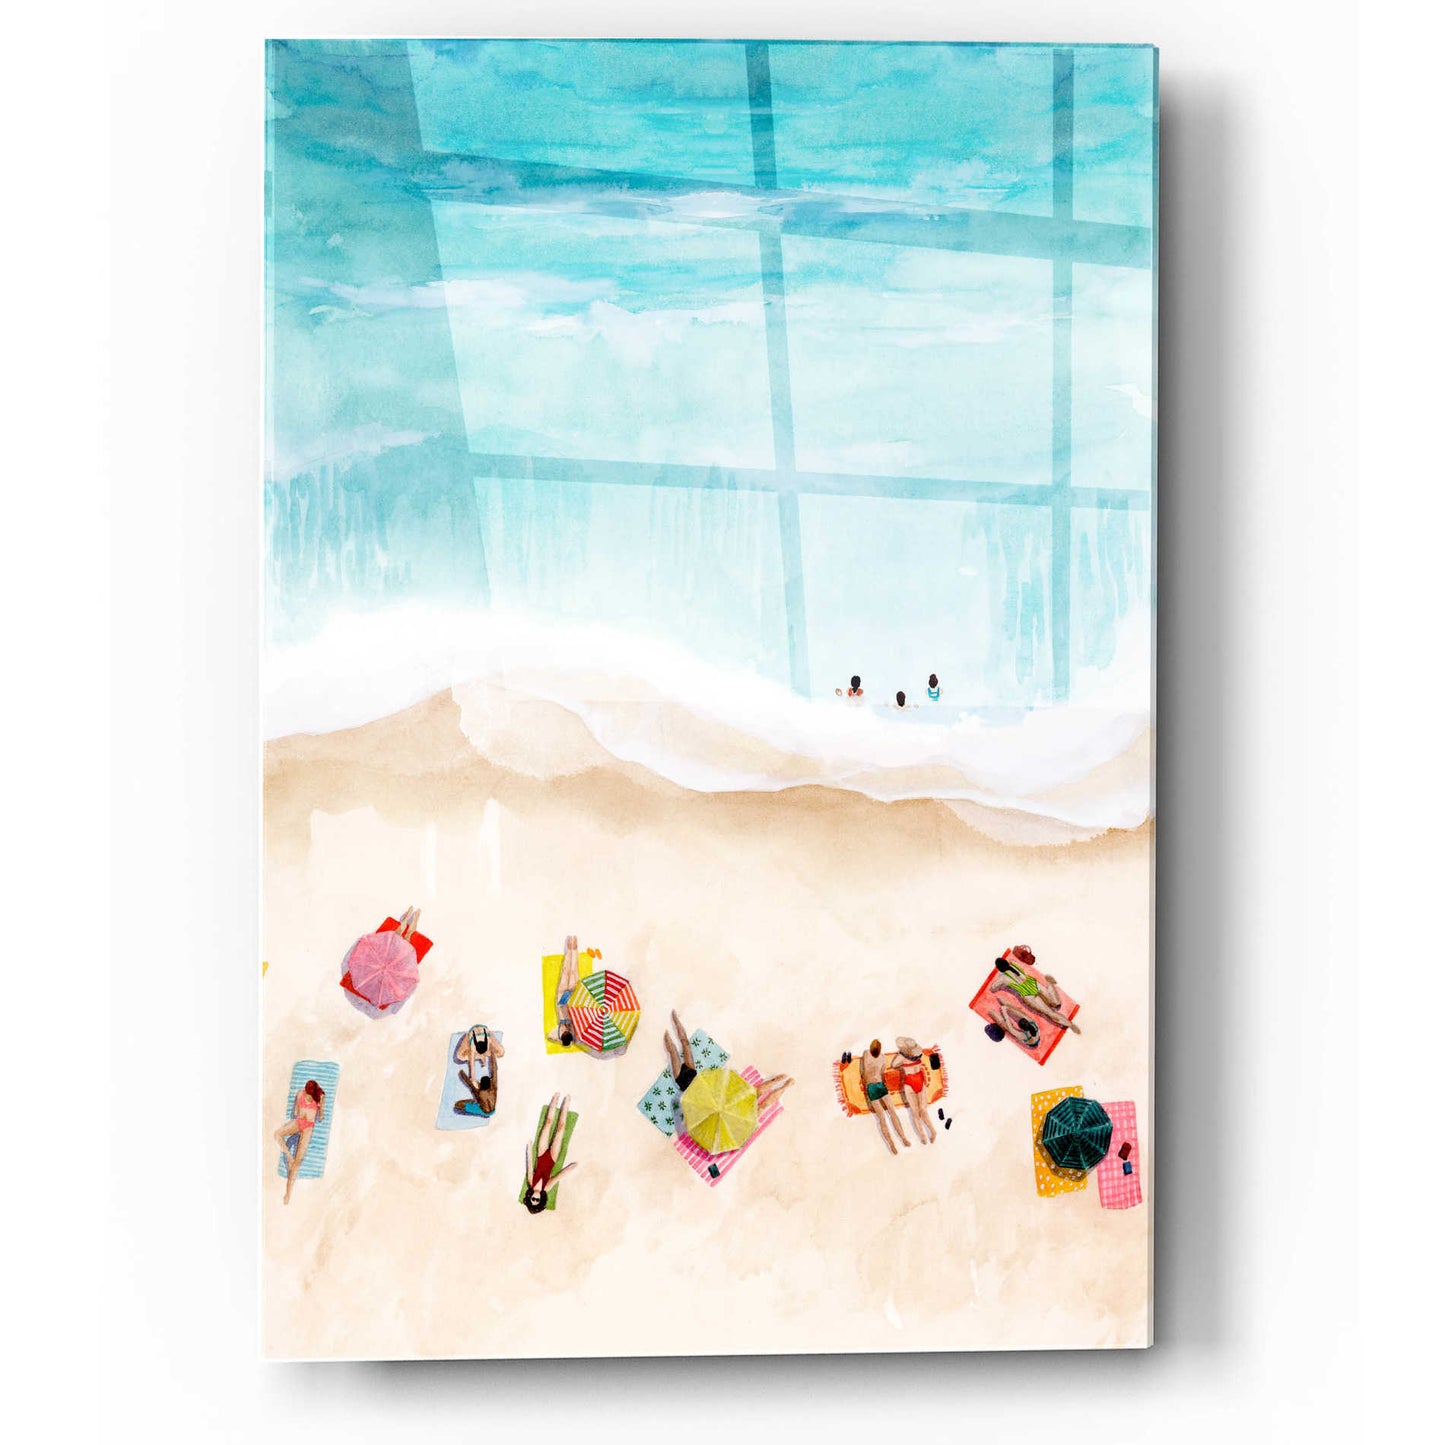 Epic Art 'Beach Week II' by Grace Popp, Acrylic Wall Glass,12x16